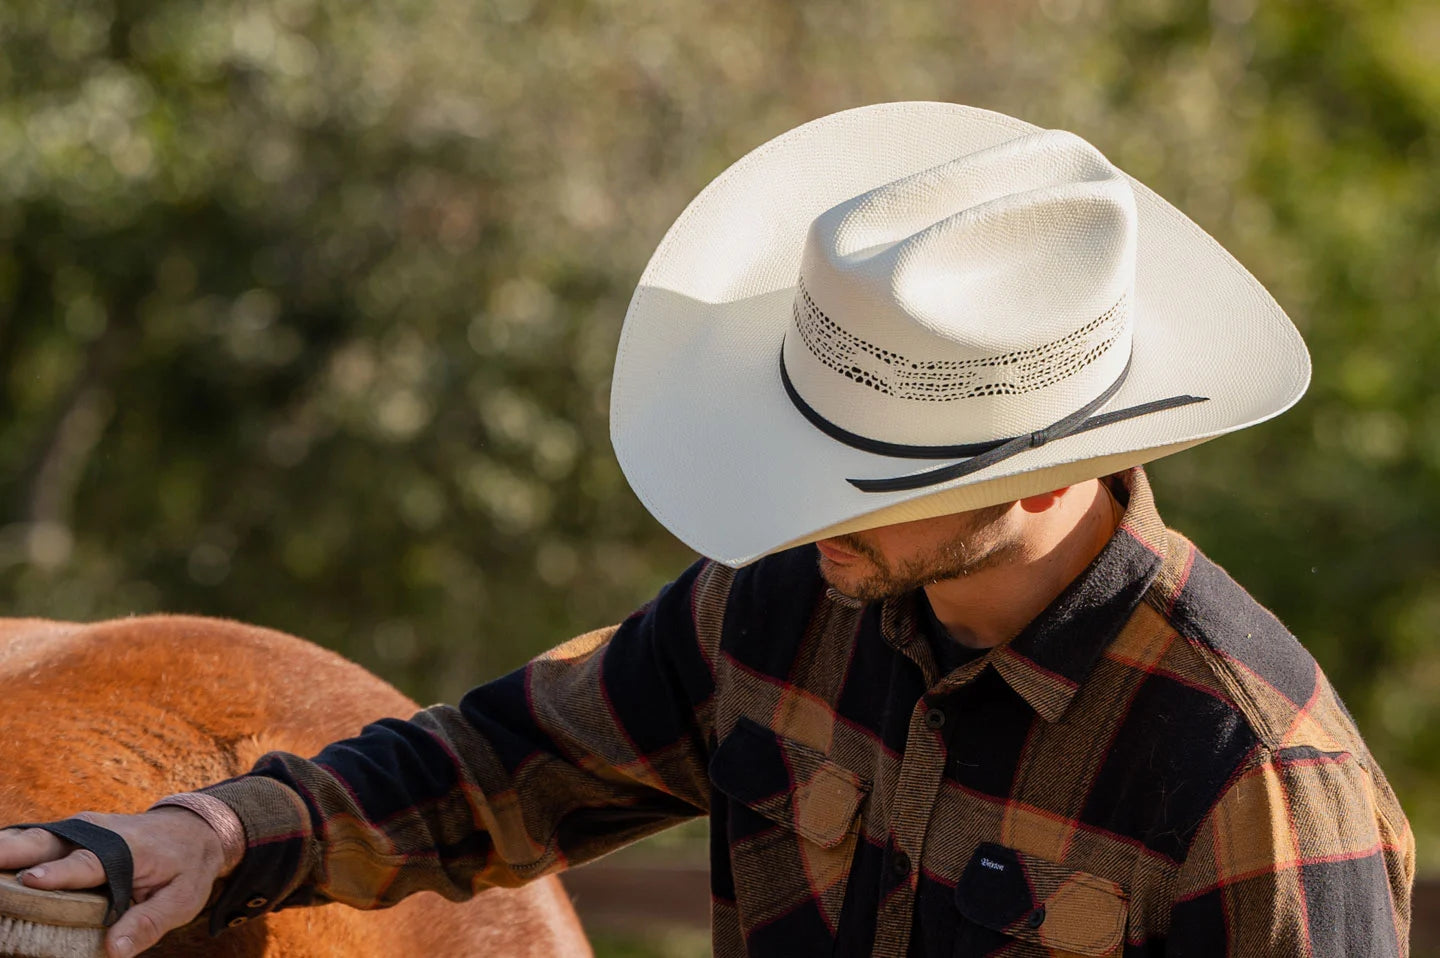 western cowboy hats